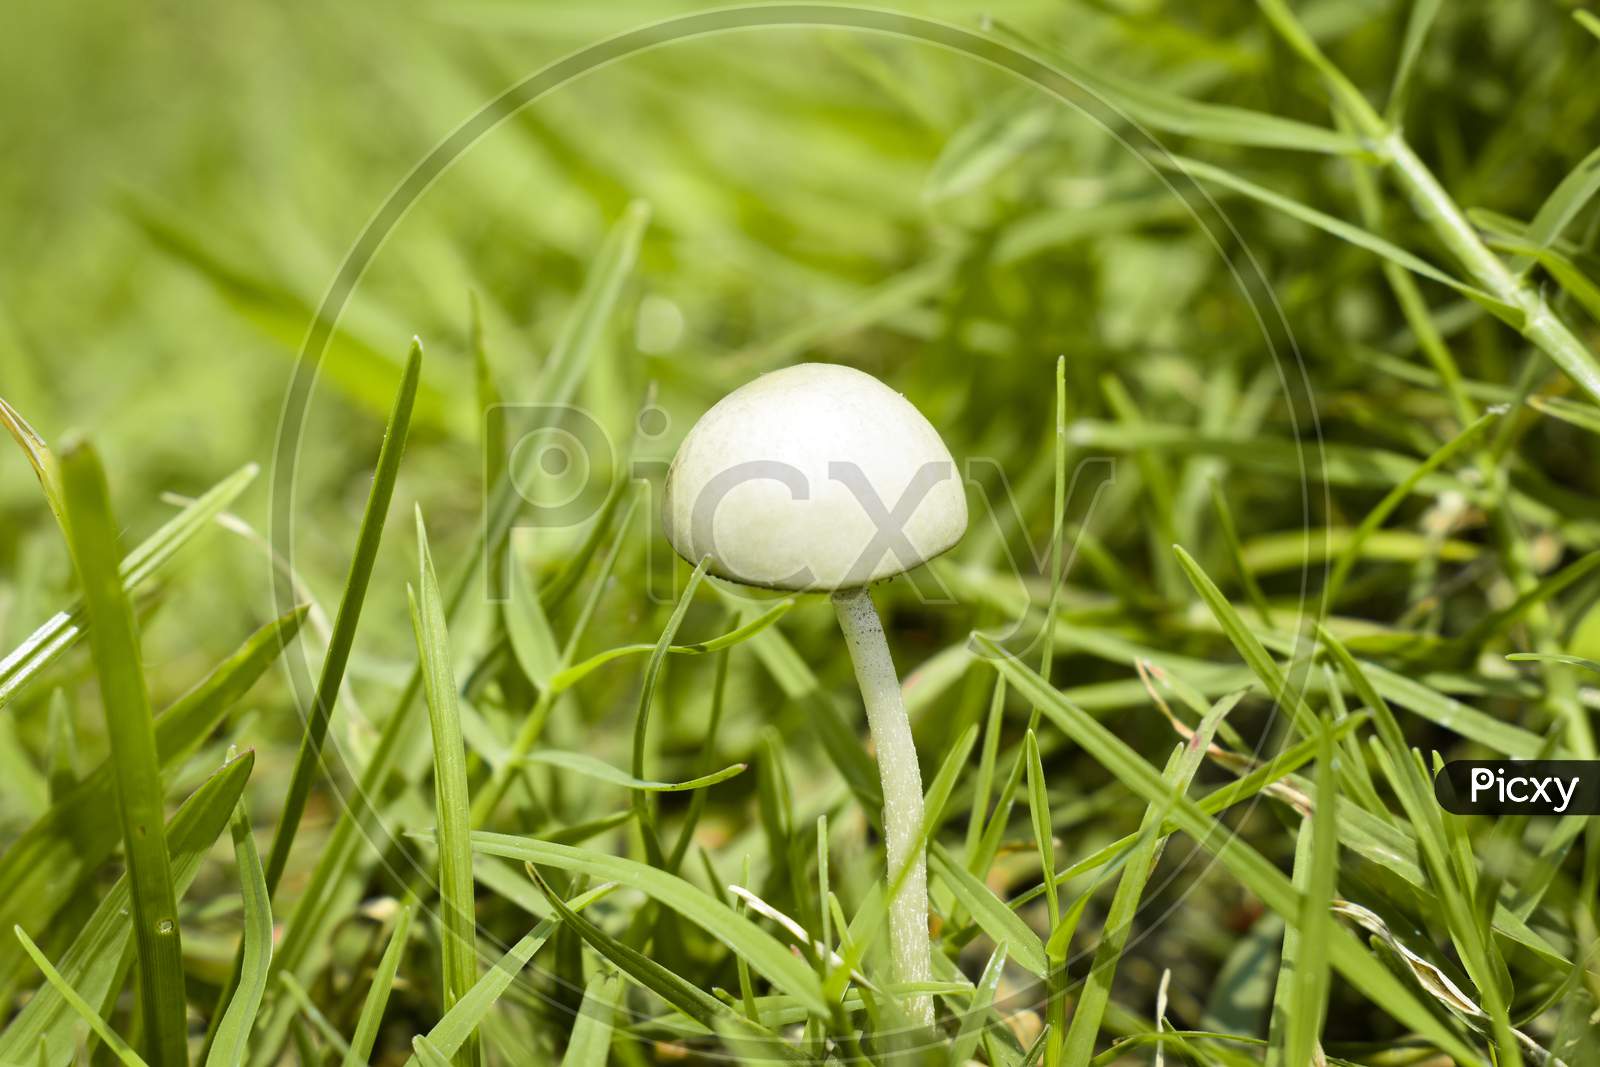 Mushroom on green grass